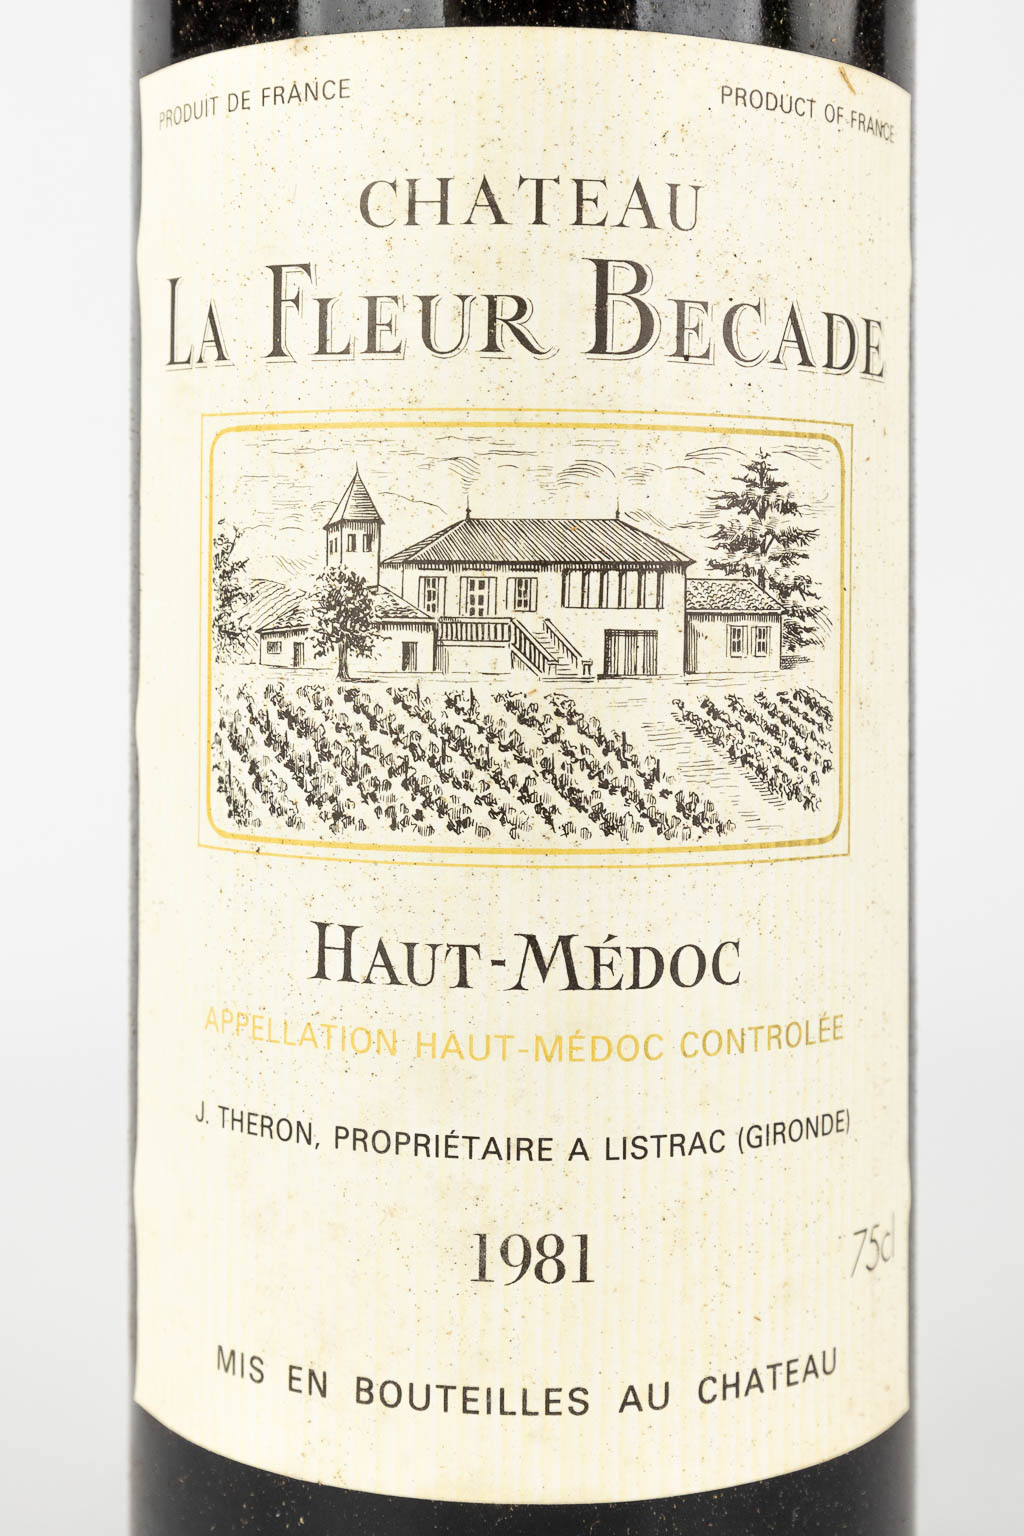 Château La Fleur Becade, 1976, 5 bottles 1981, 1 bottle.